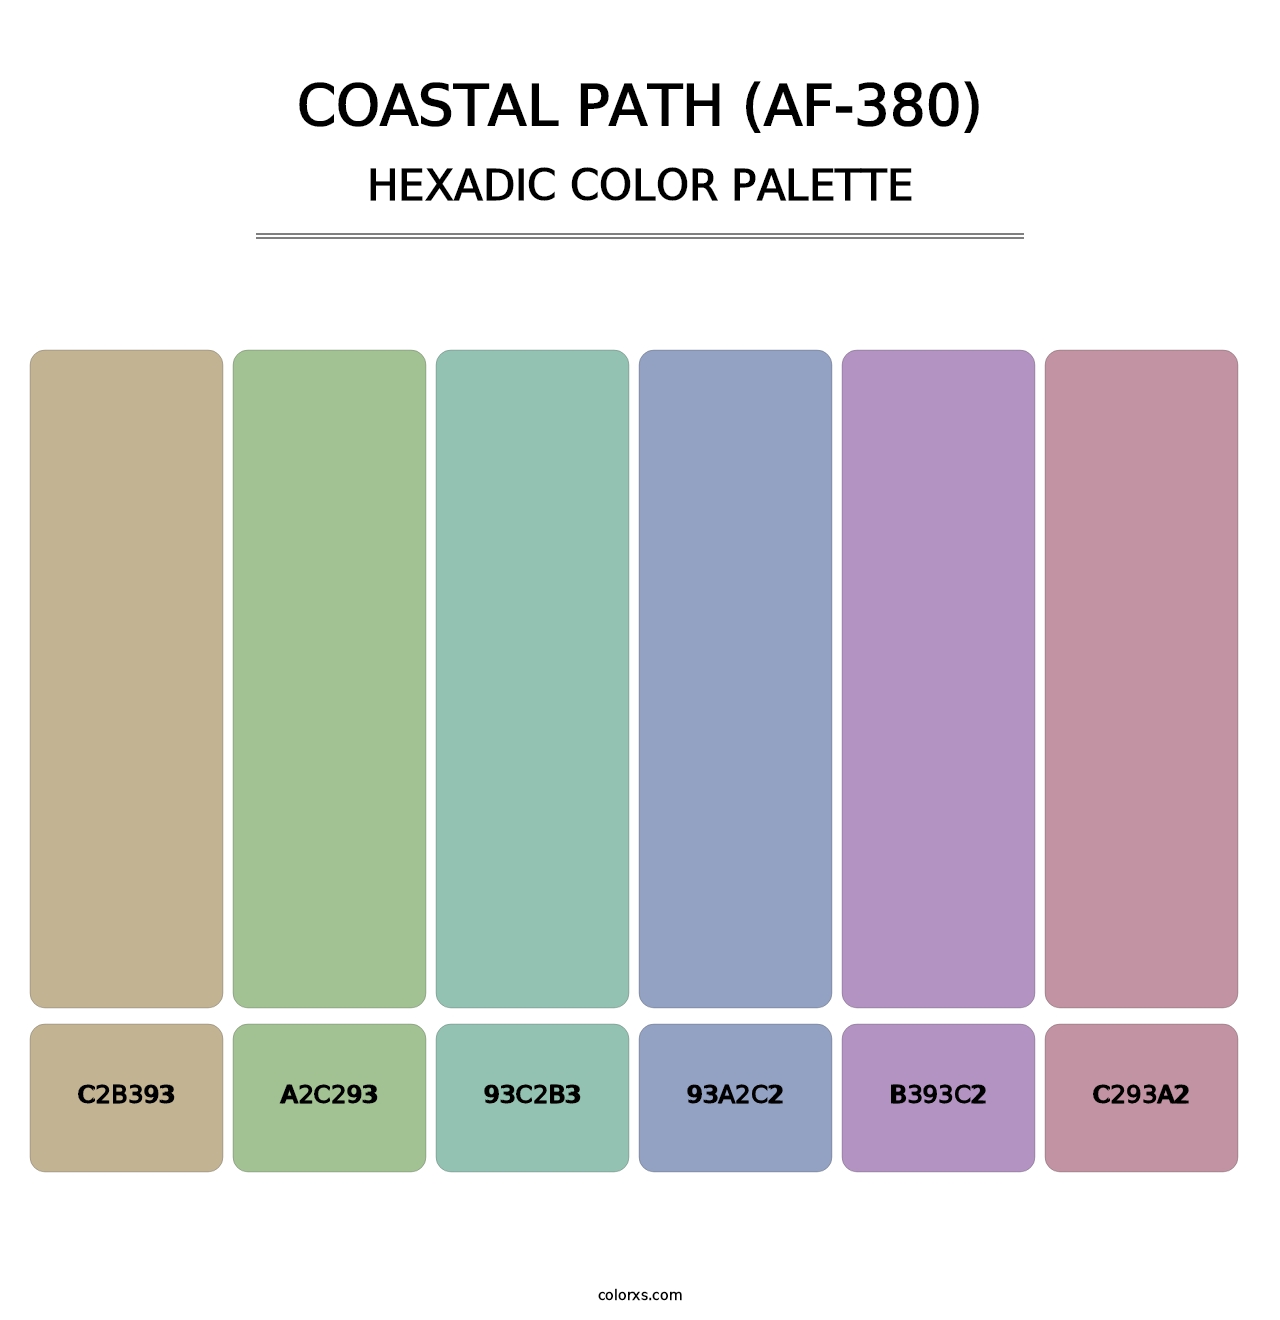 Coastal Path (AF-380) - Hexadic Color Palette